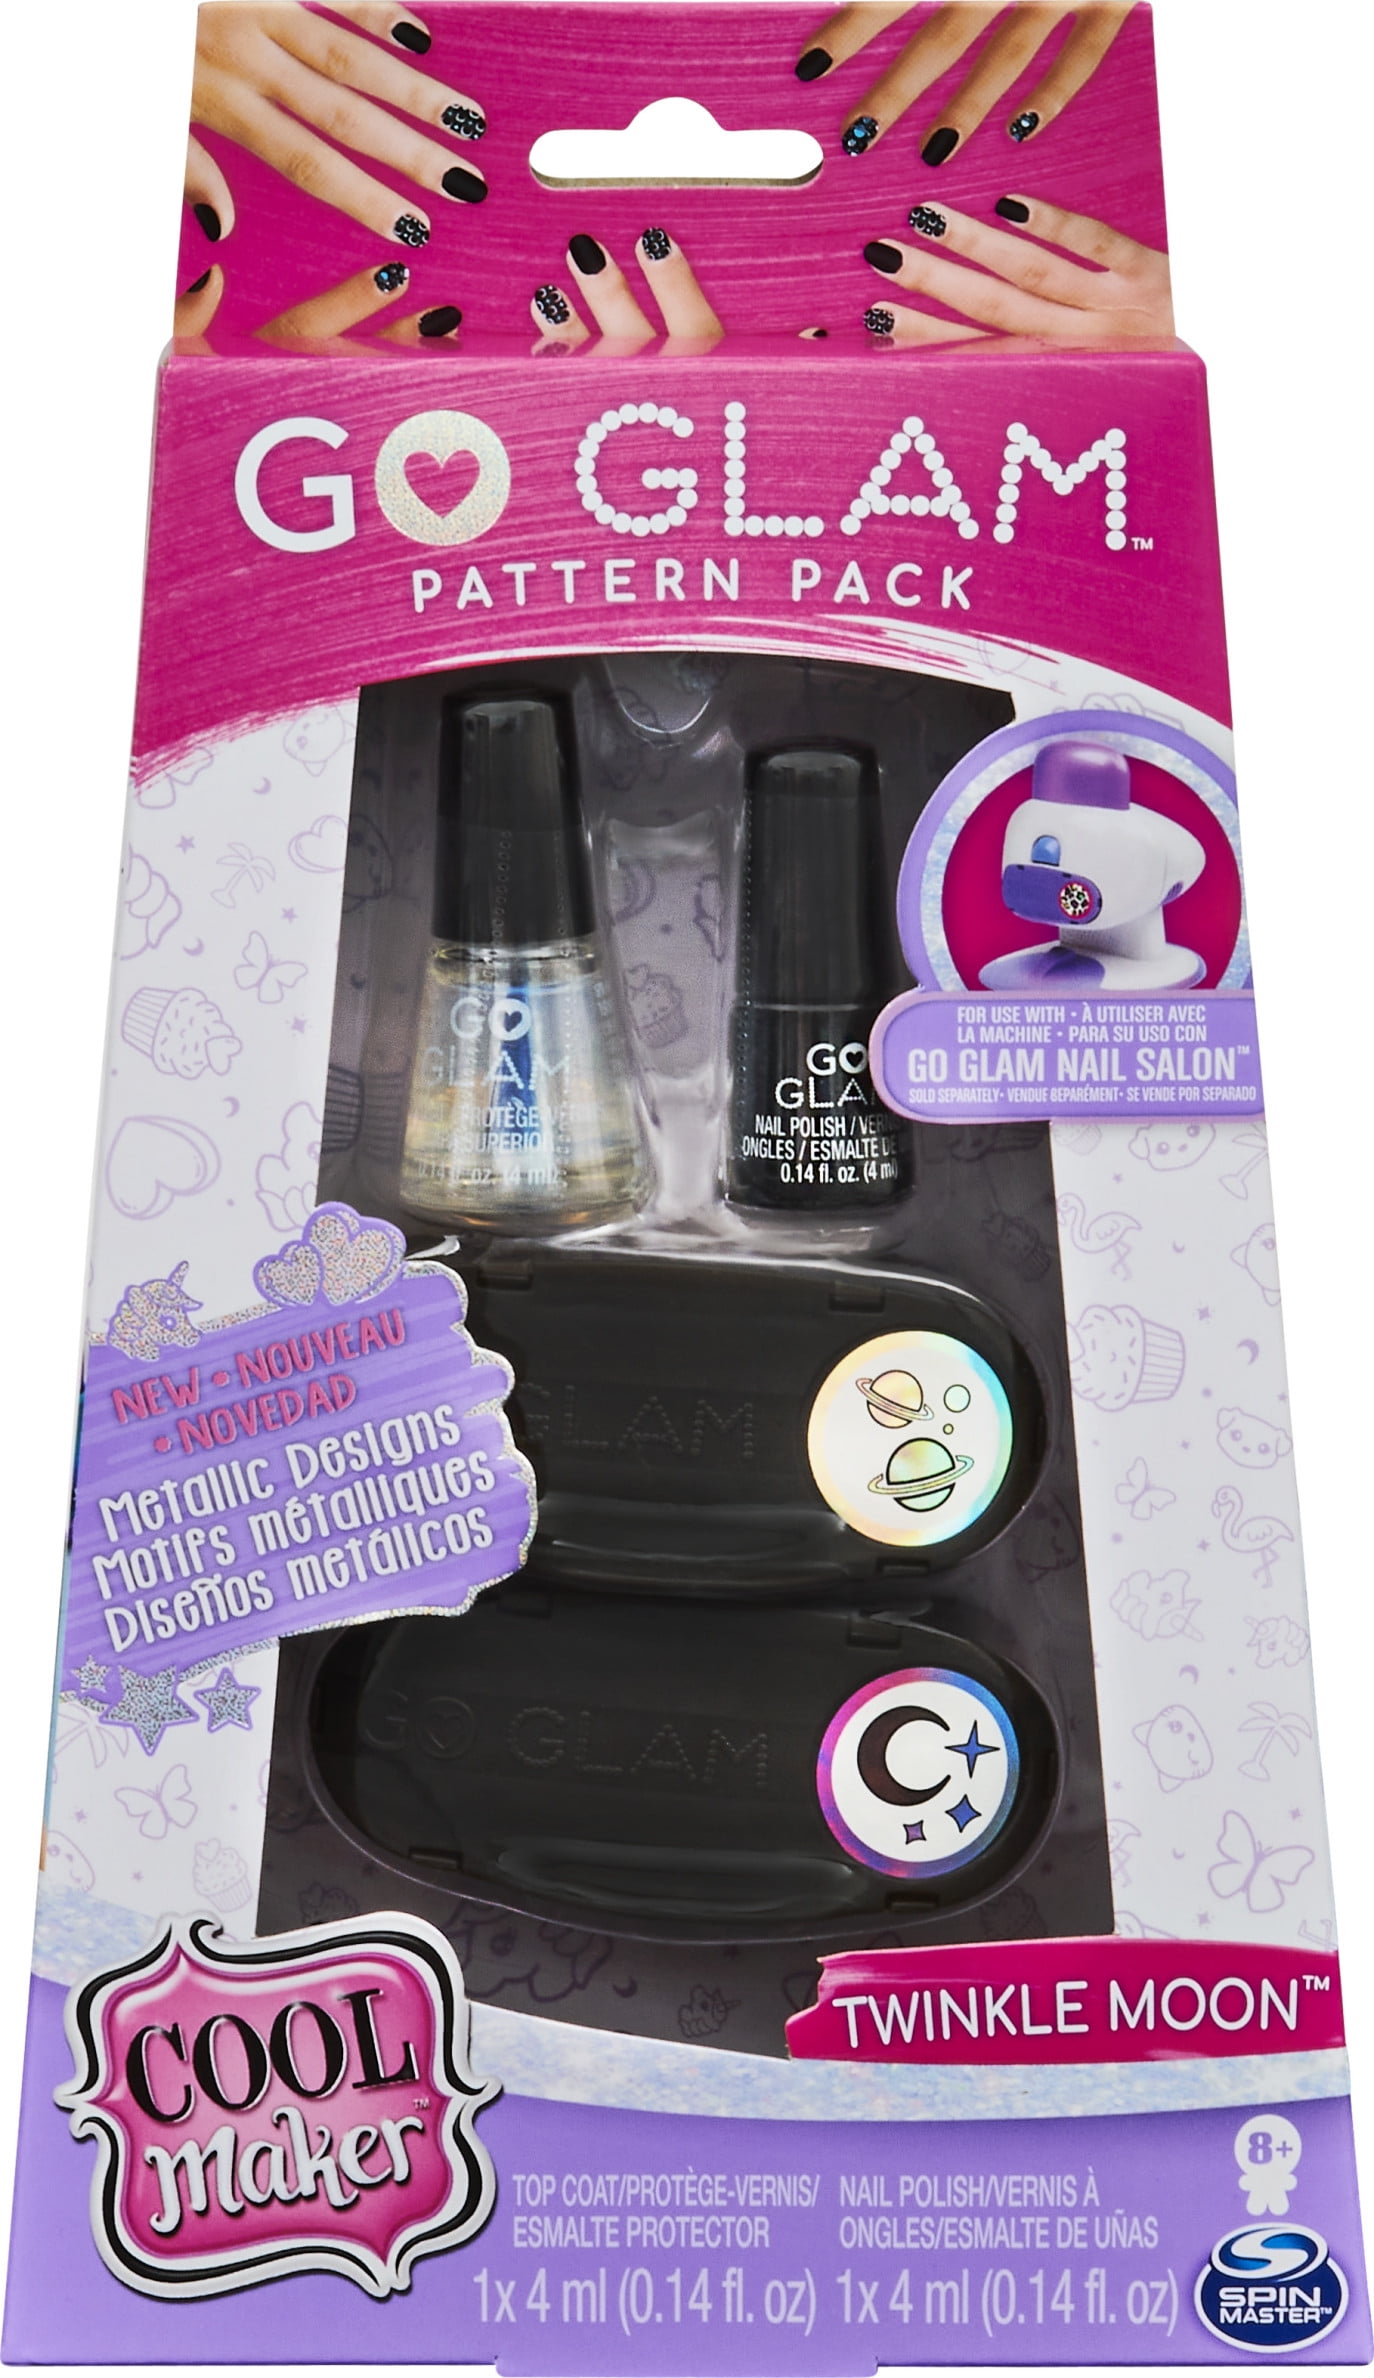 Go Glam Glitter Nails Refill Pattern Pack - Love Story, 1 - Baker's